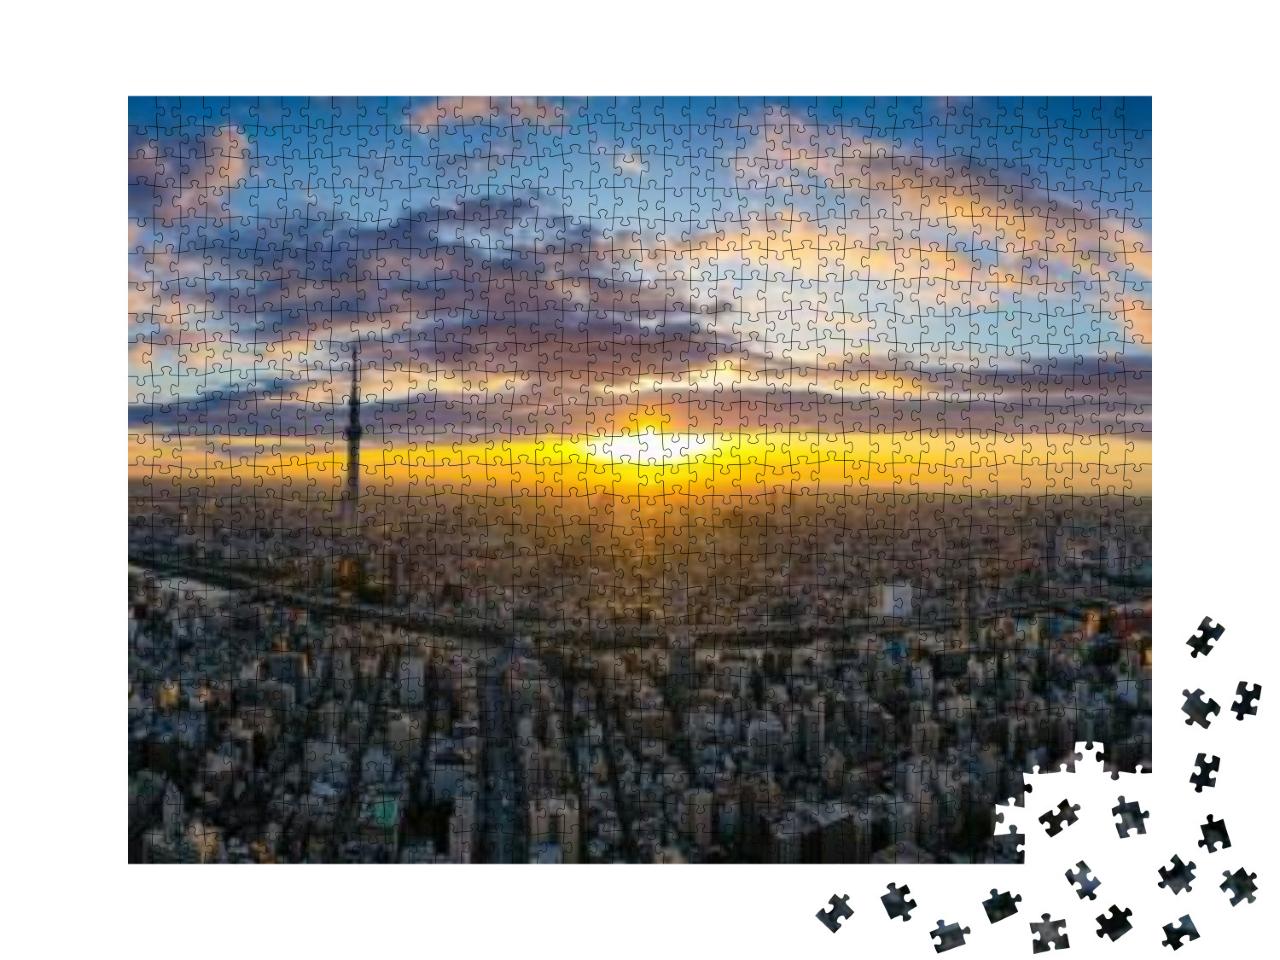 Puzzle 1000 Teile „Tokio im Licht der aufgehenden Sonne“